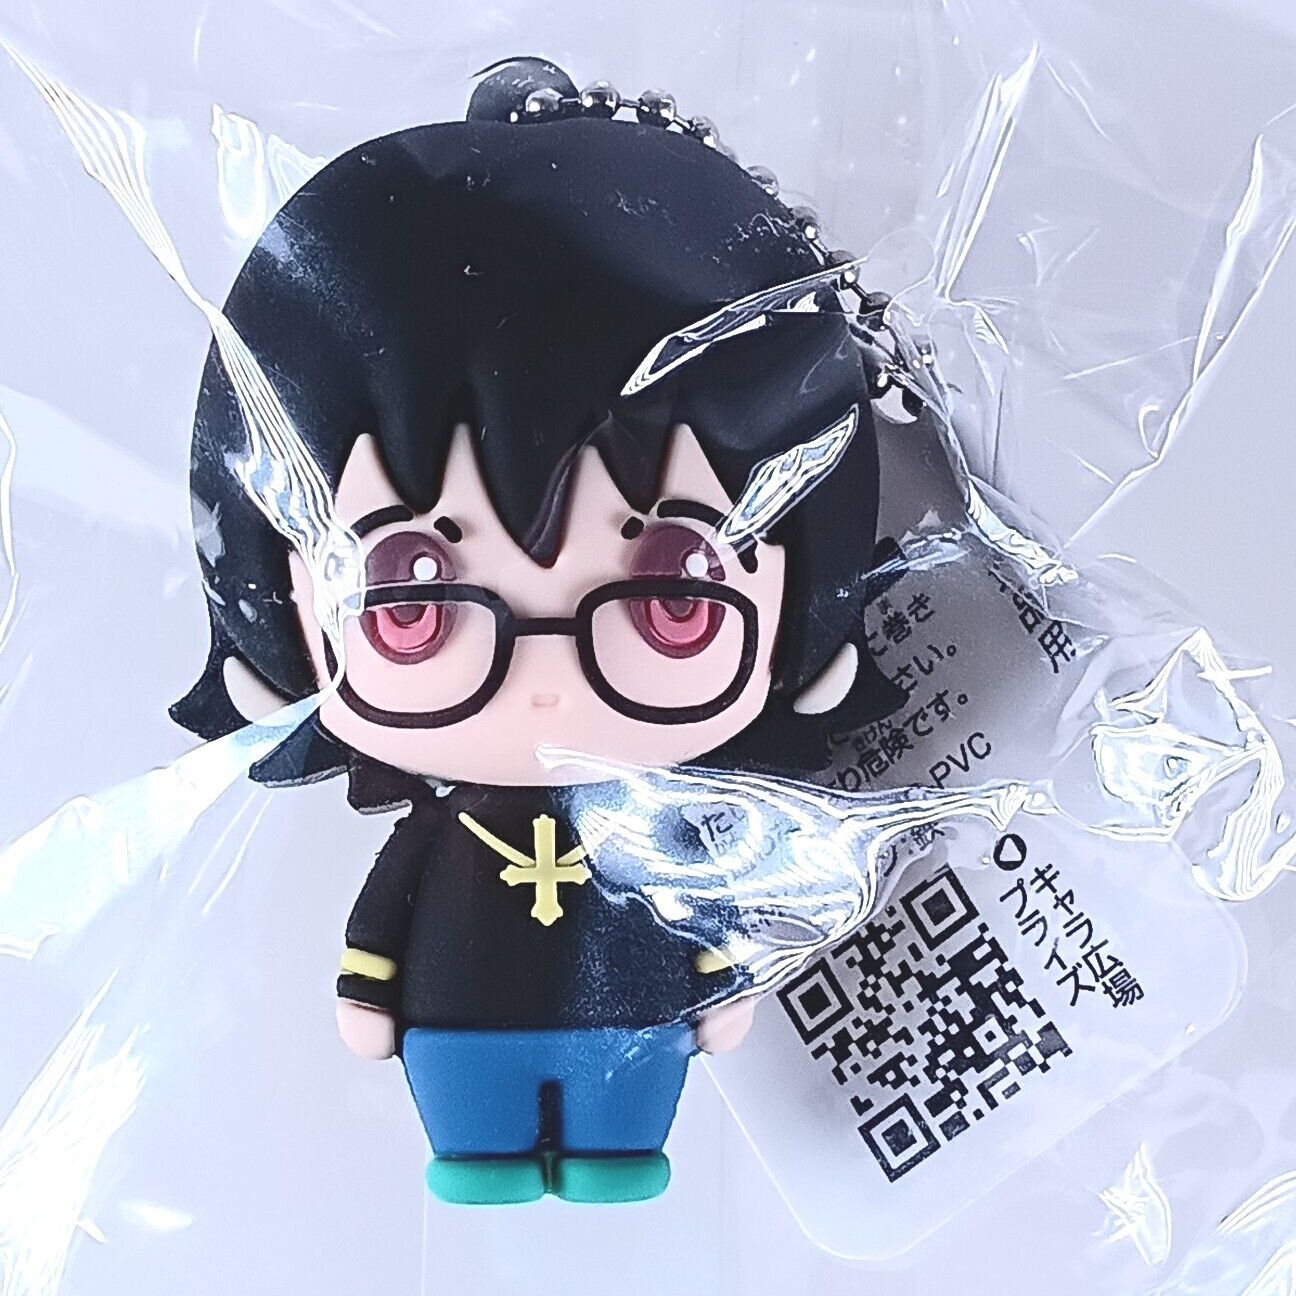 Shizuku Murasaki Hunter x Hunter 3D Rubber Mascot Keychain From Japan F/S